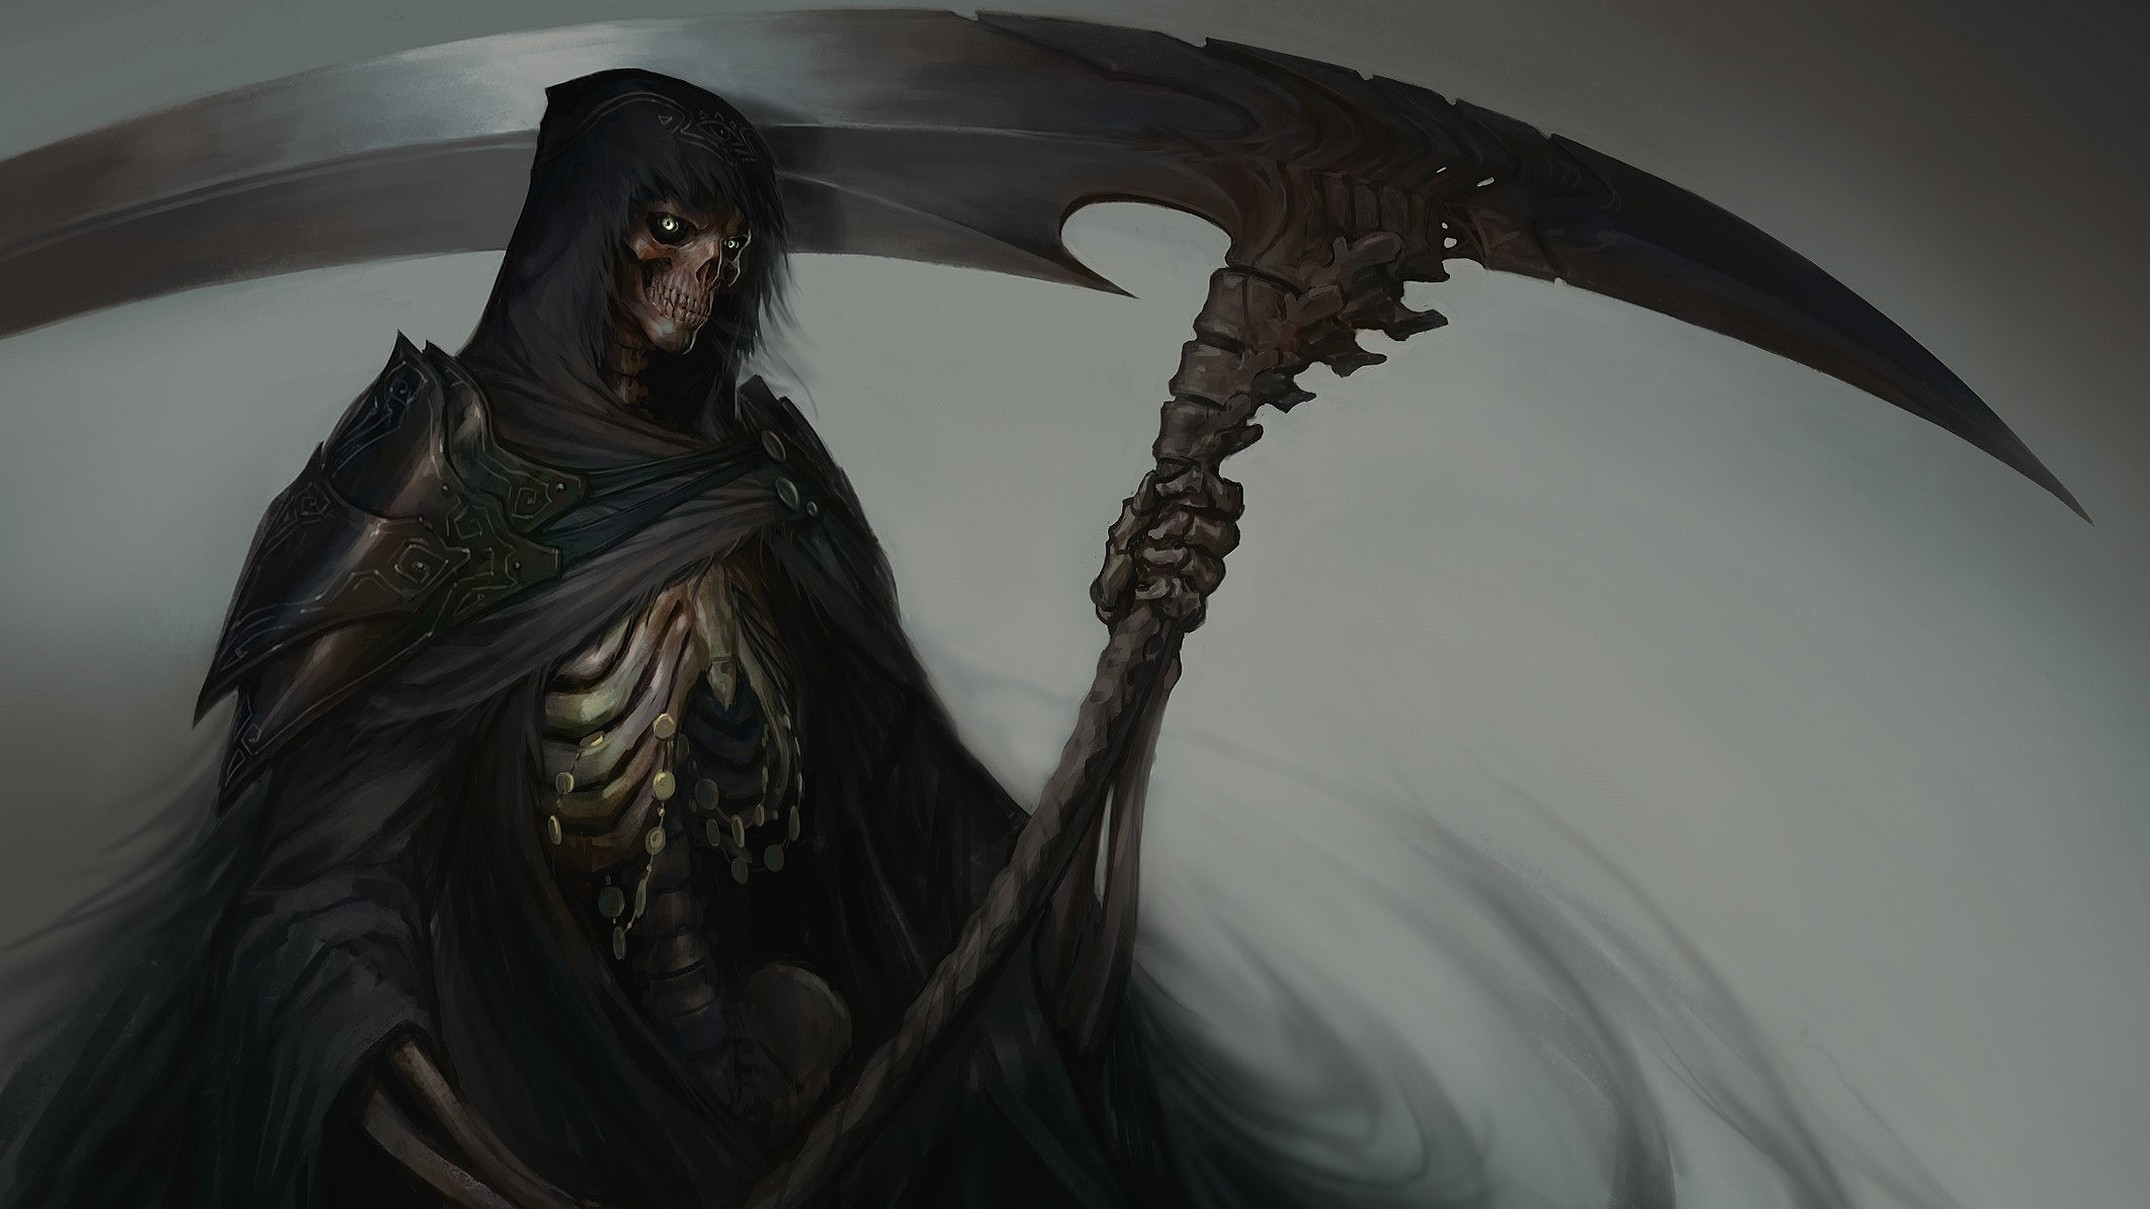 Female Grim Reaper Art Wallpapers.